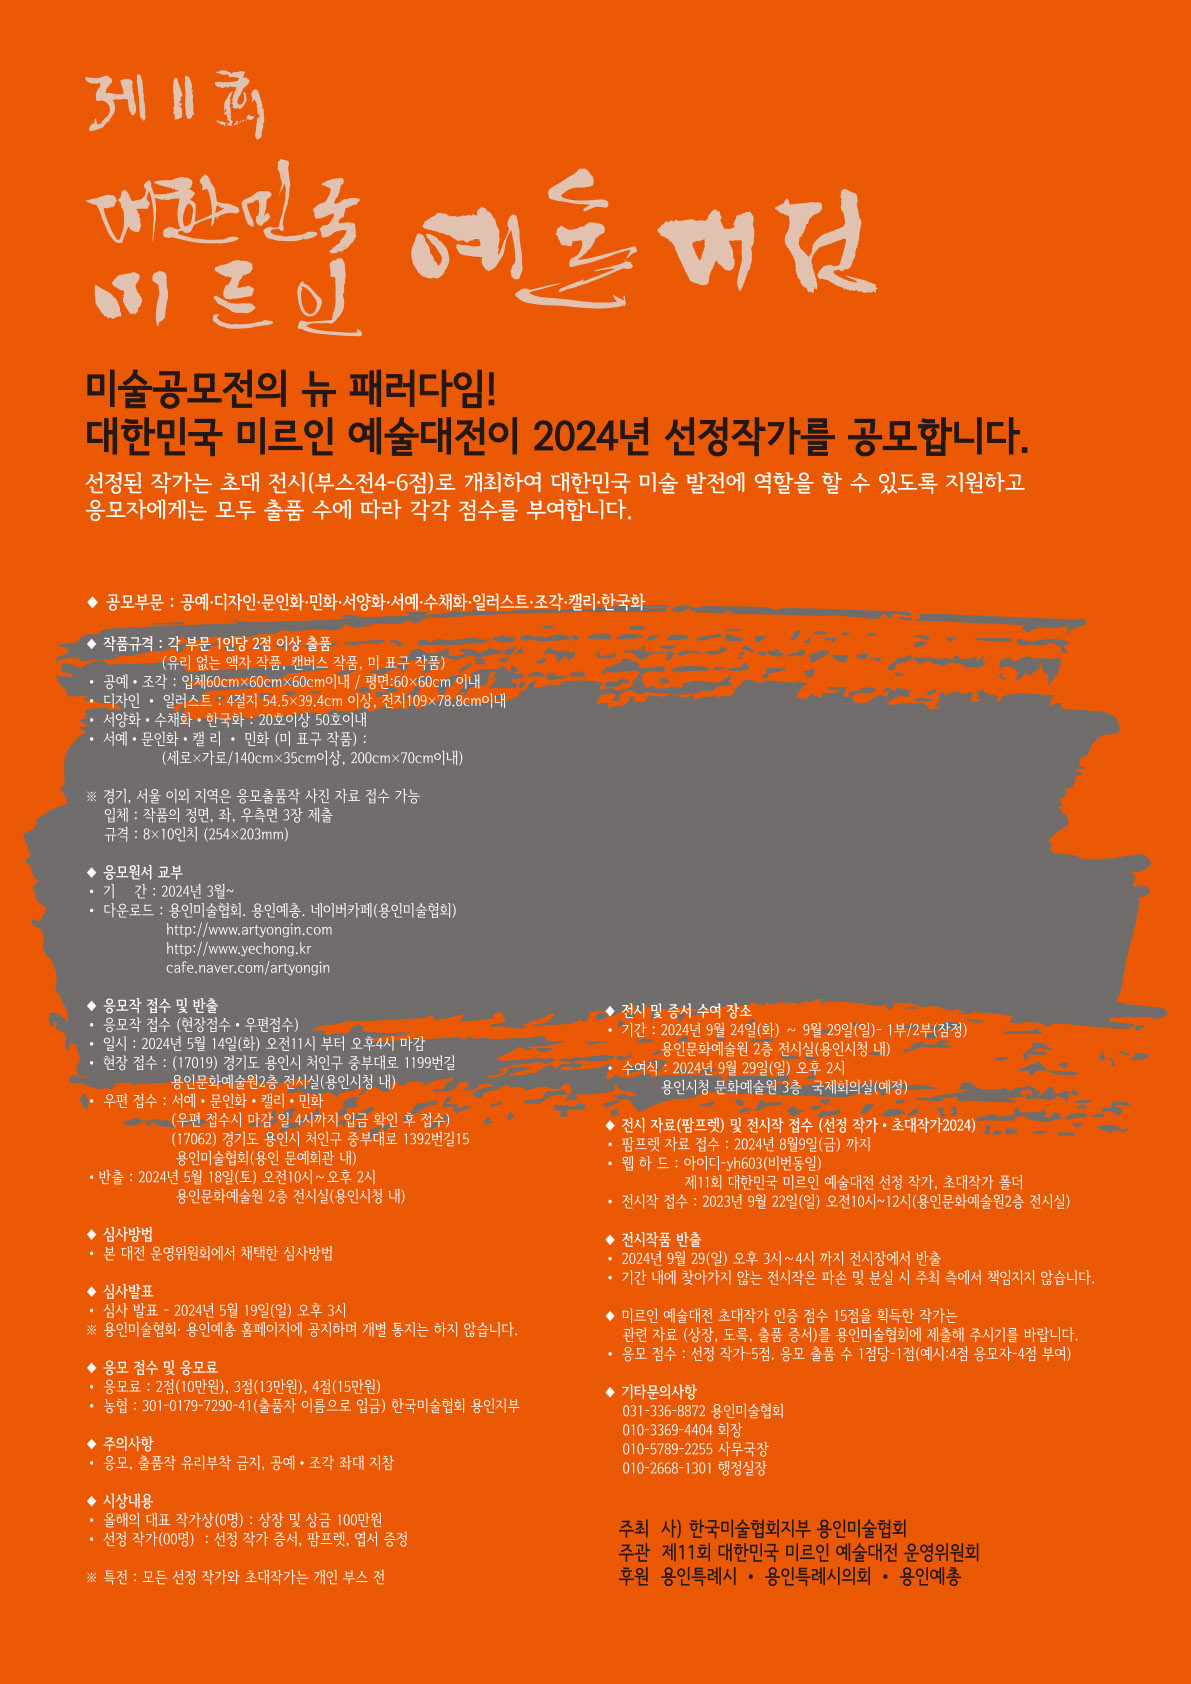 제11회 대한민국 미르인 예술대전 1차(공모기간) 홍보포스터